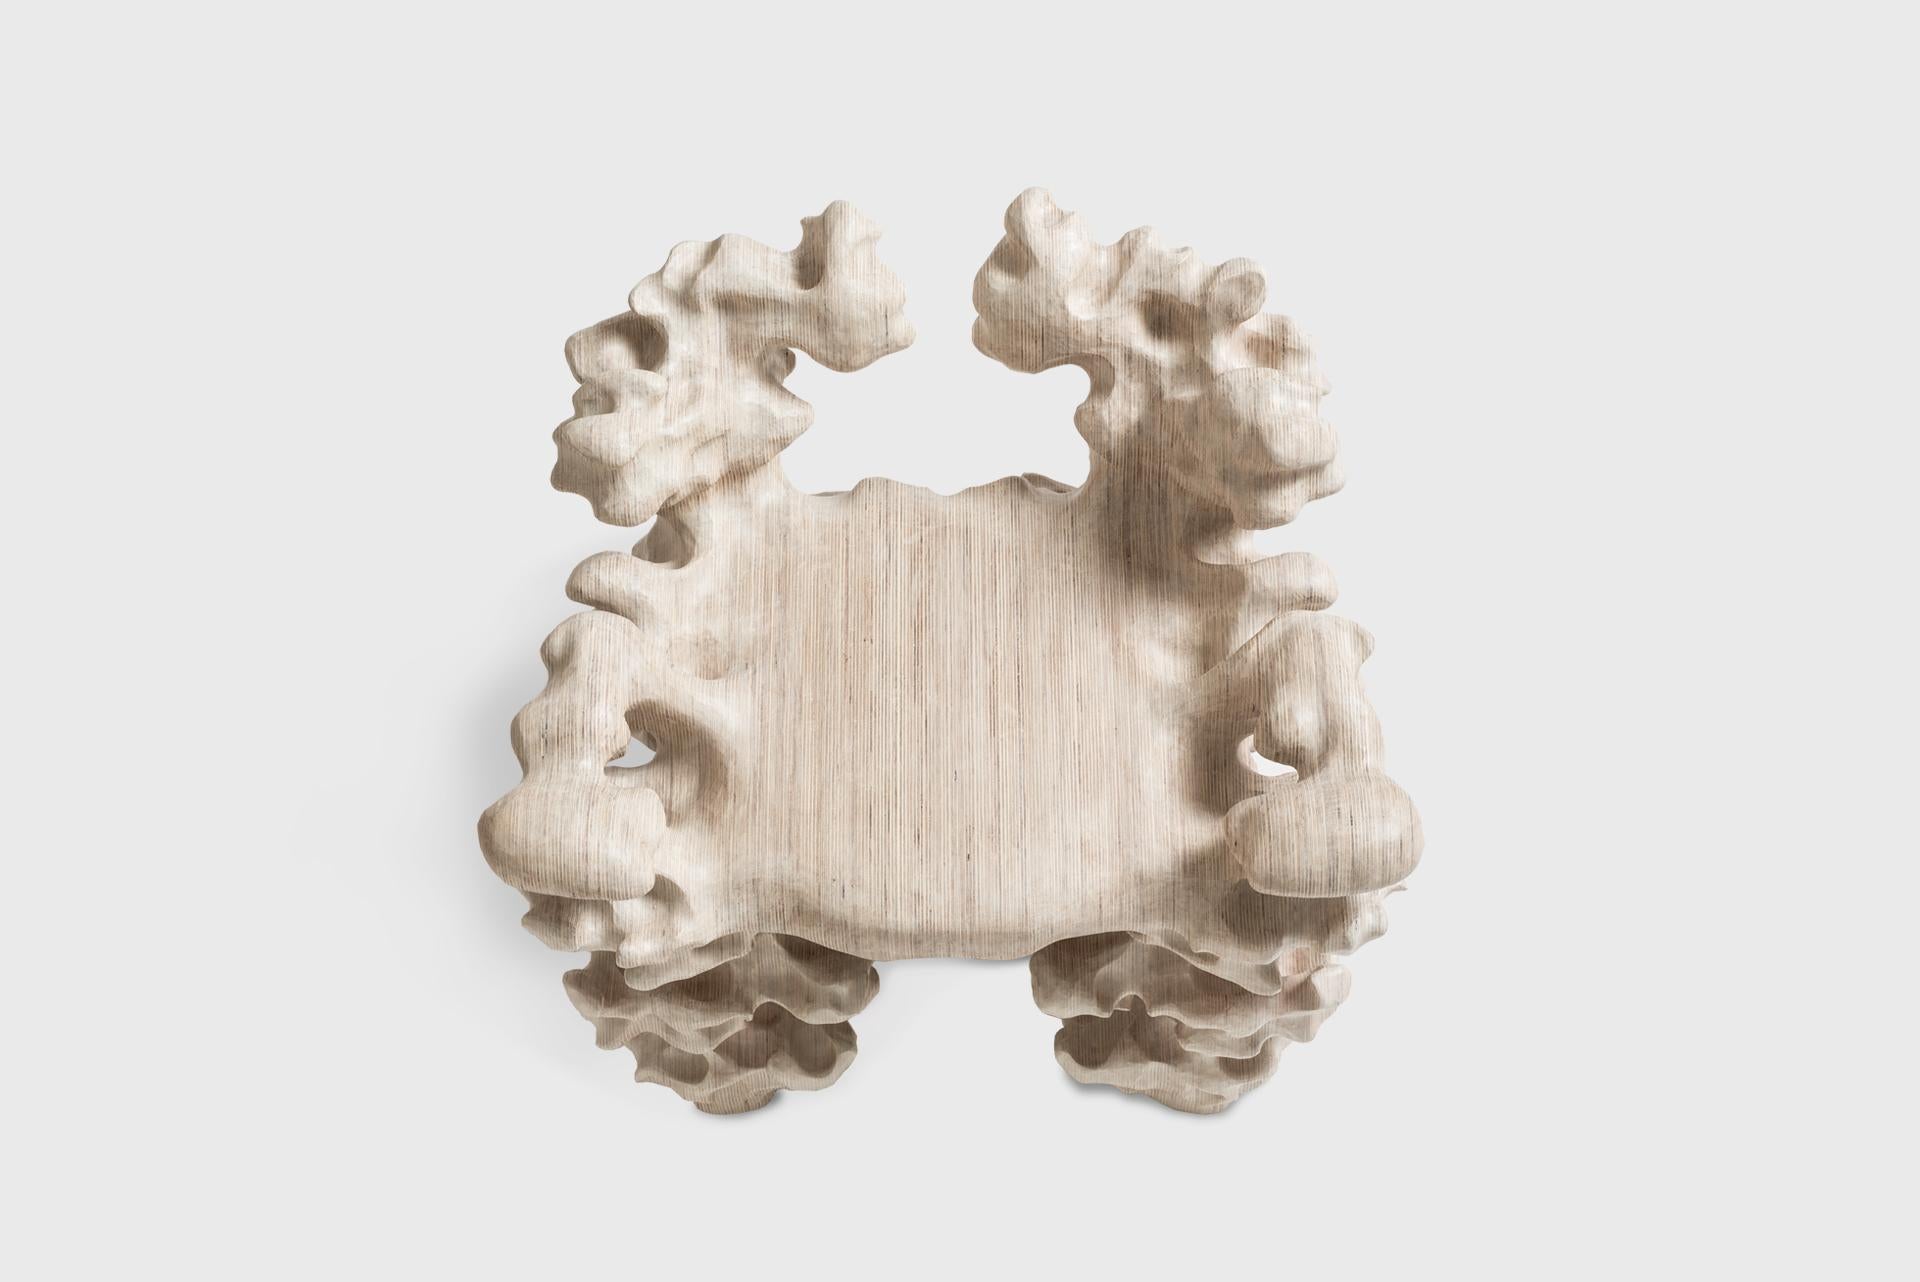 Contemporary Artisanal Stool in Plain Wood, by Tadeas Podracky, Organic Shapes 2